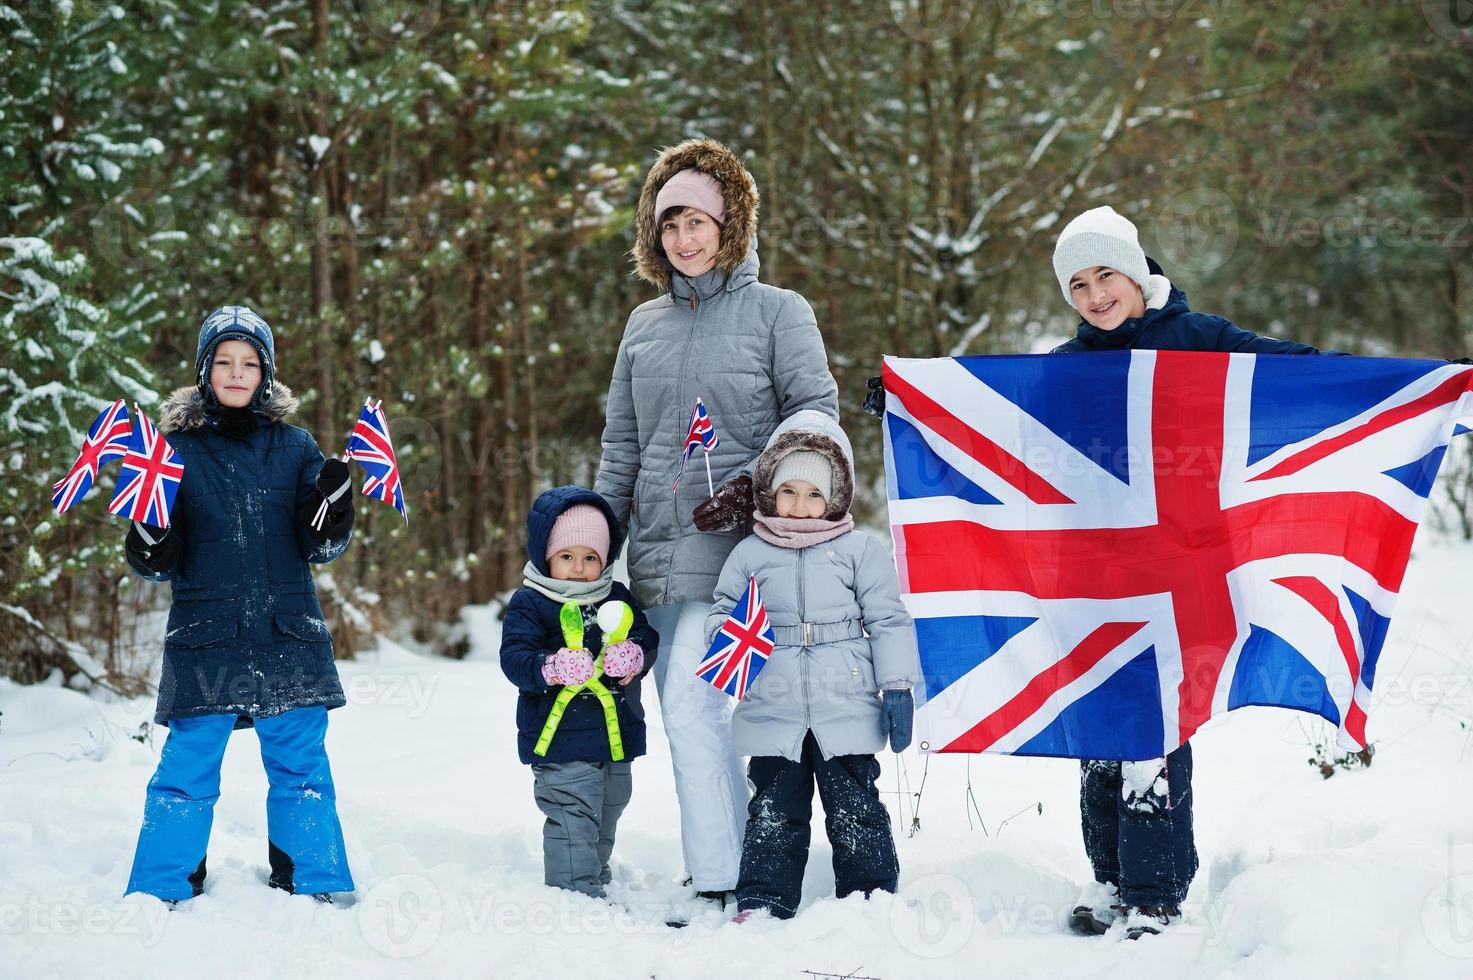 moeder met kinderen die vlag van groot-brittannië op winterlandschap houden. foto